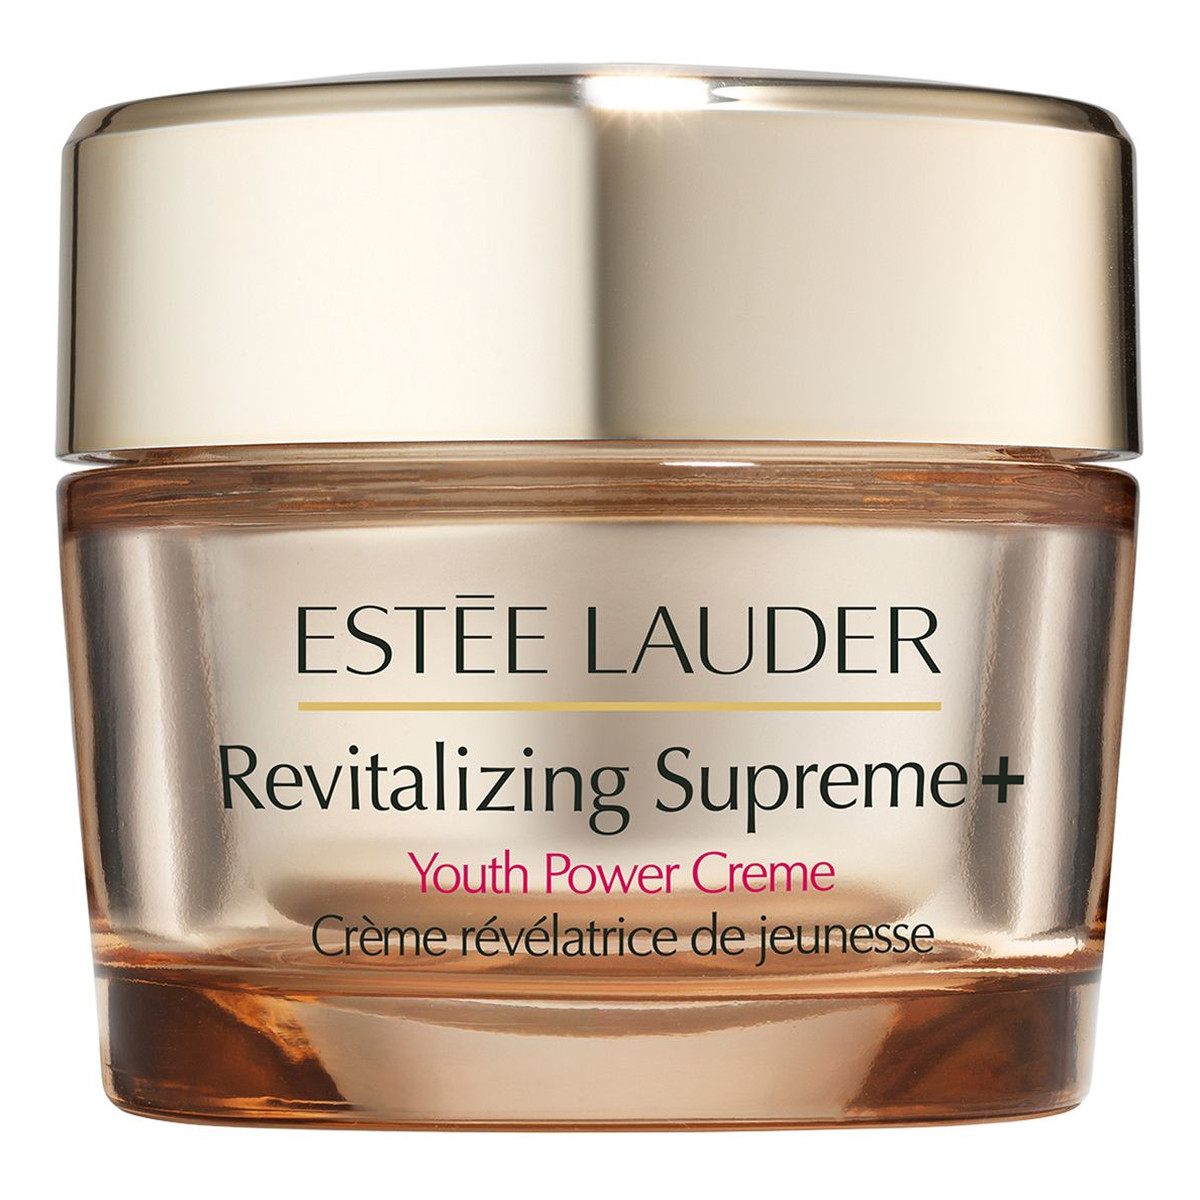 Estee Lauder Revitalizing Supreme+ Youth Power Creme rewitalizujący krem przeciwzmarszczkowy 50ml